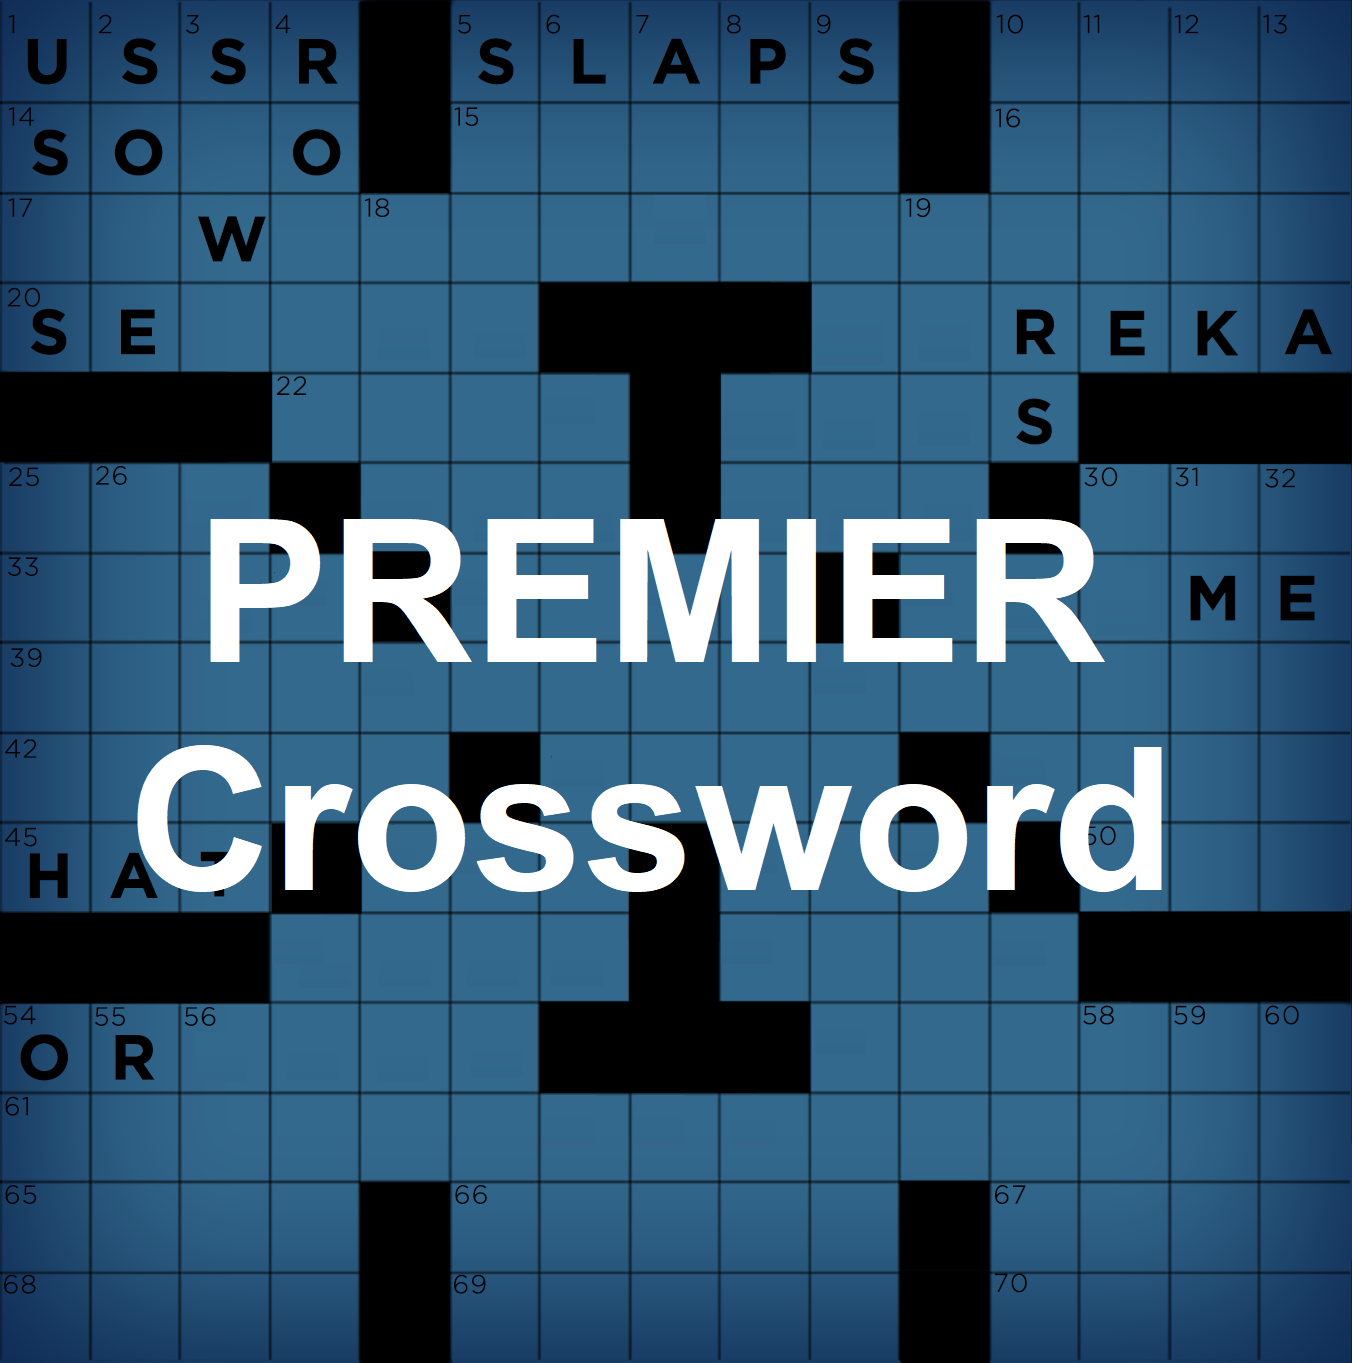 Premier Crossword - Free Printable Frank Longo Sunday Crossword Puzzles